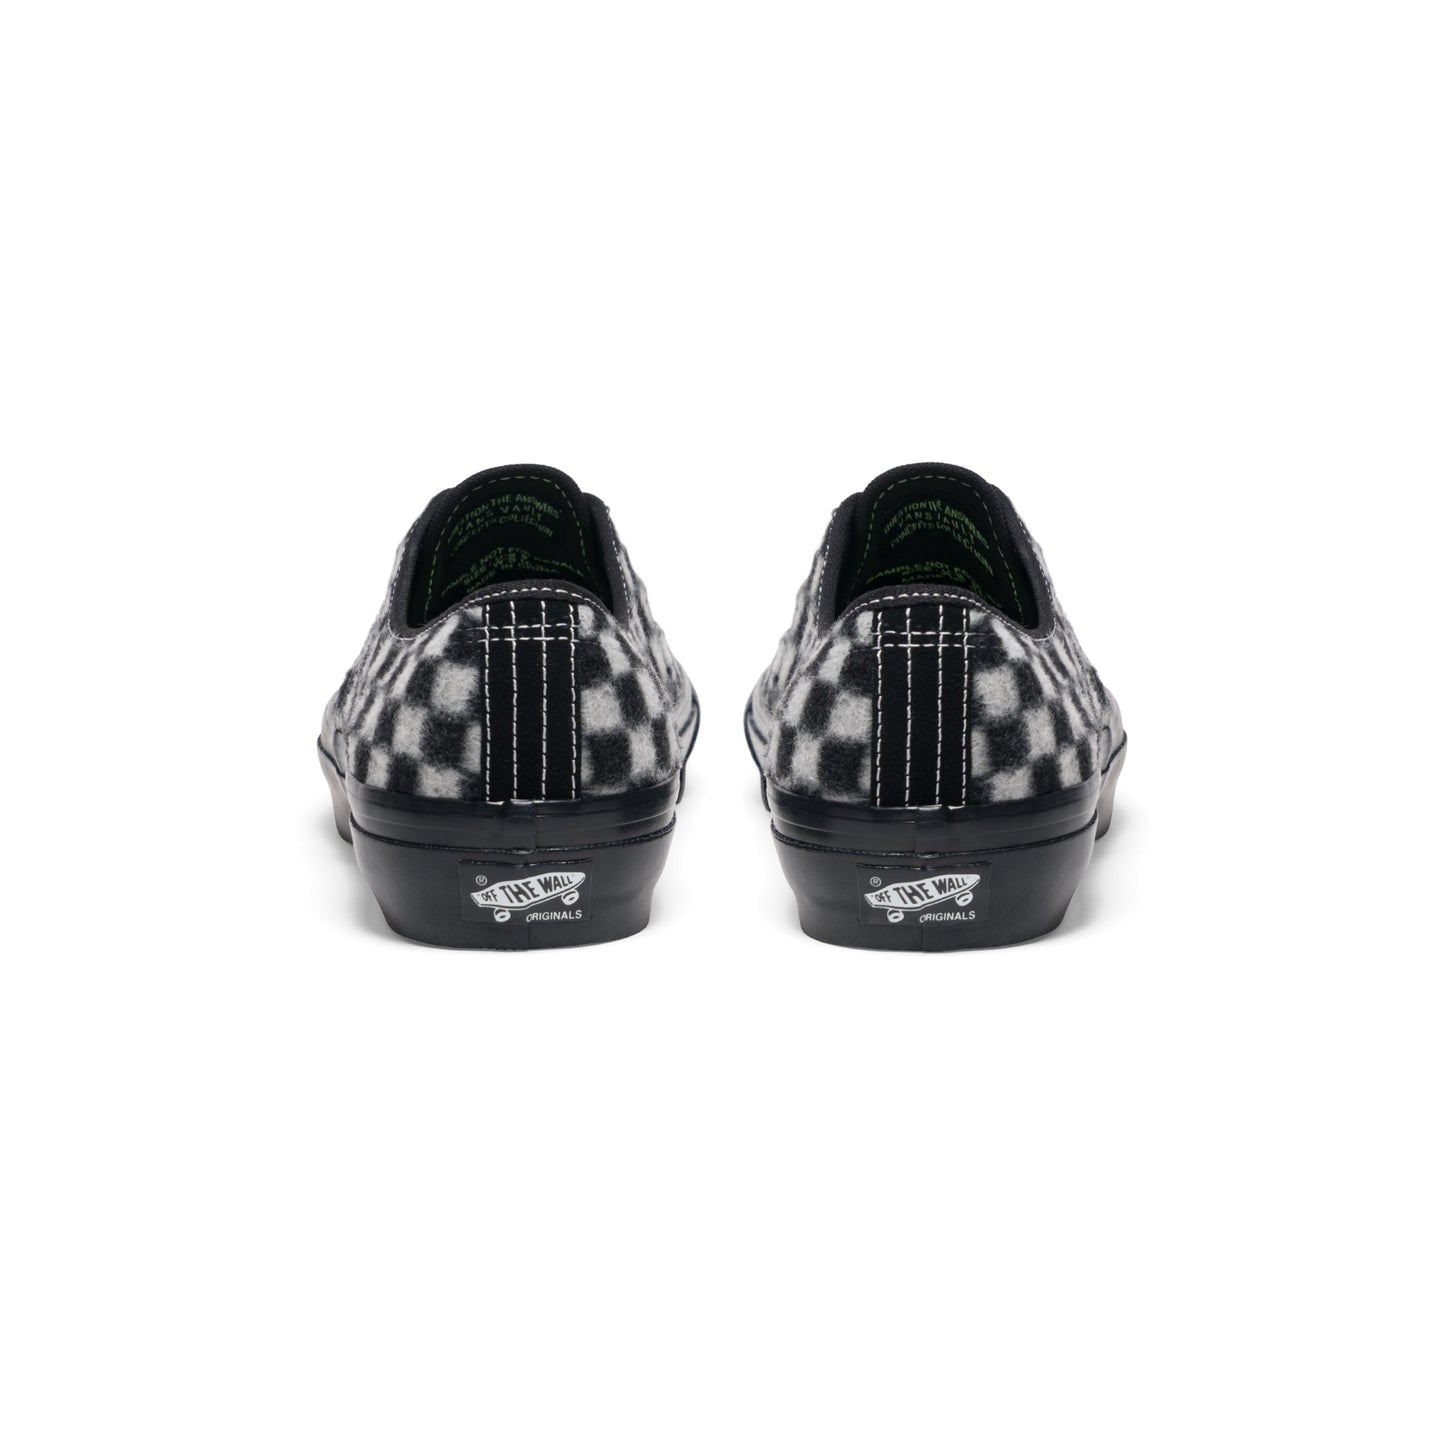 Concepts x Vans UA OG Authentic LX Mohair (Black/White)